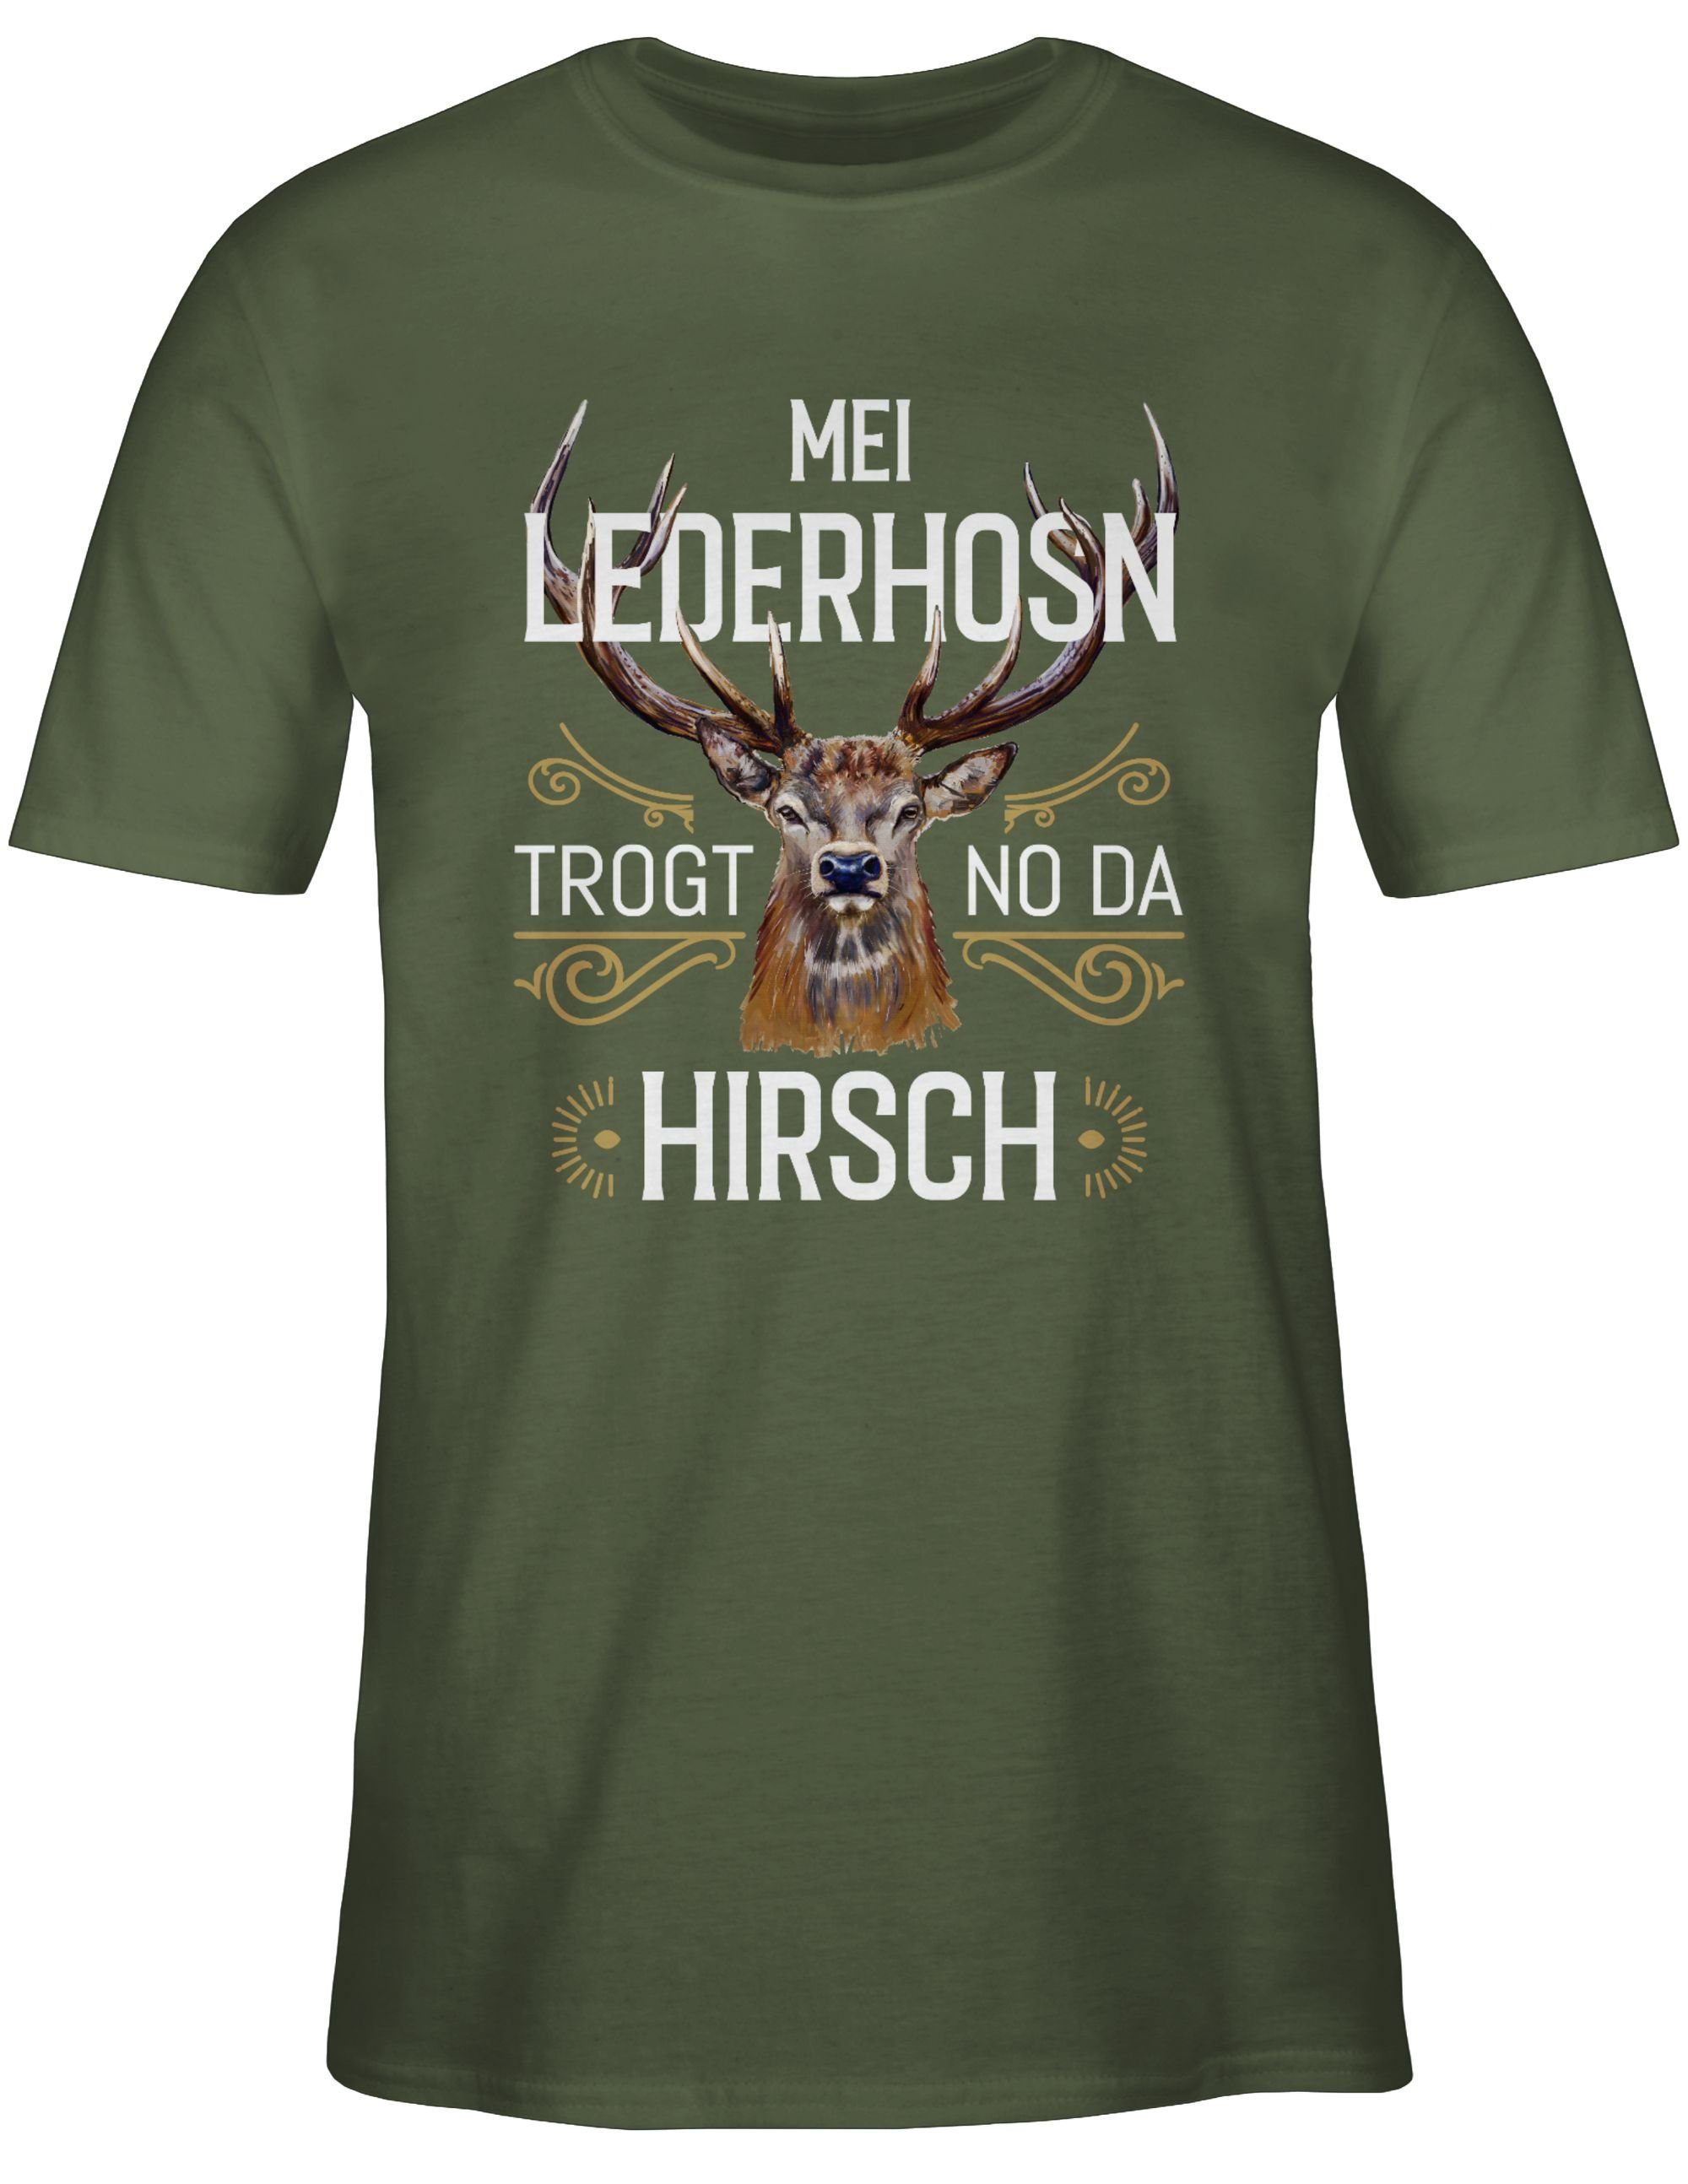 Army Oktoberfest 02 Mei Mode weiß Hirsch Herren trogt für no T-Shirt Grün da braun Lederhosn Shirtracer -